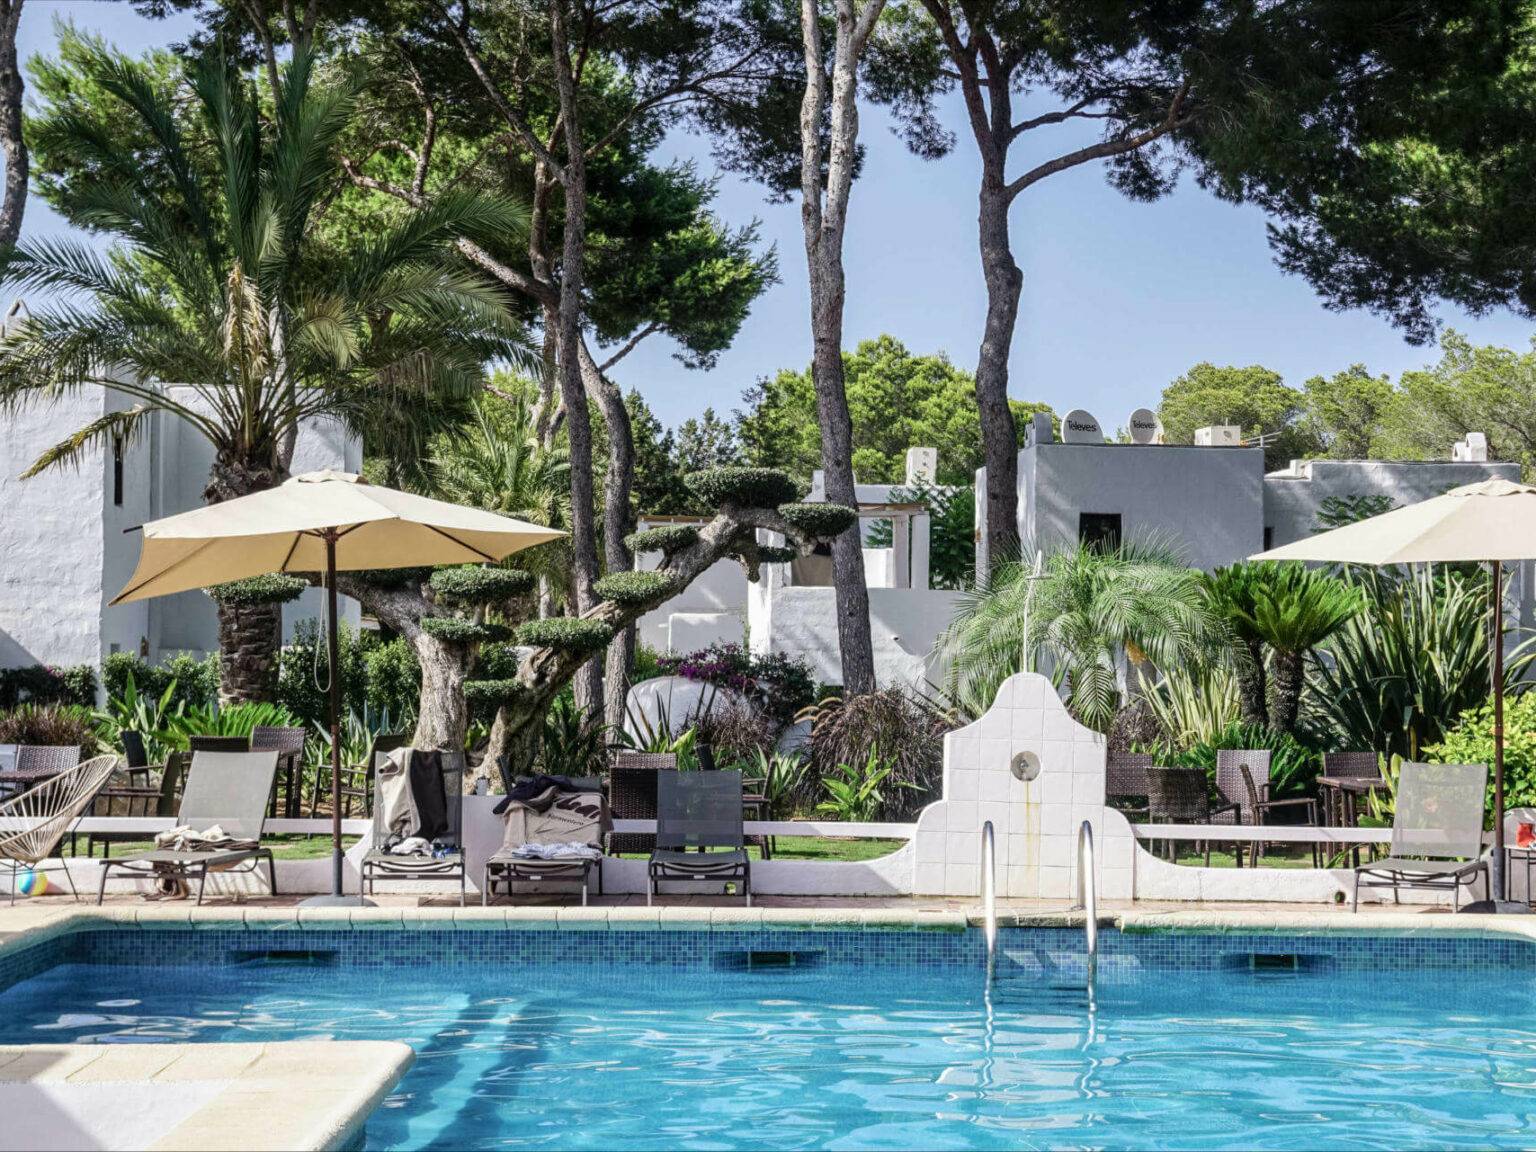 Im Pool der Unterkunft Hotel Casbah auf Formentera kann man zwischen Palmen und weißen Steingebäuden die Seele baumeln lassen.